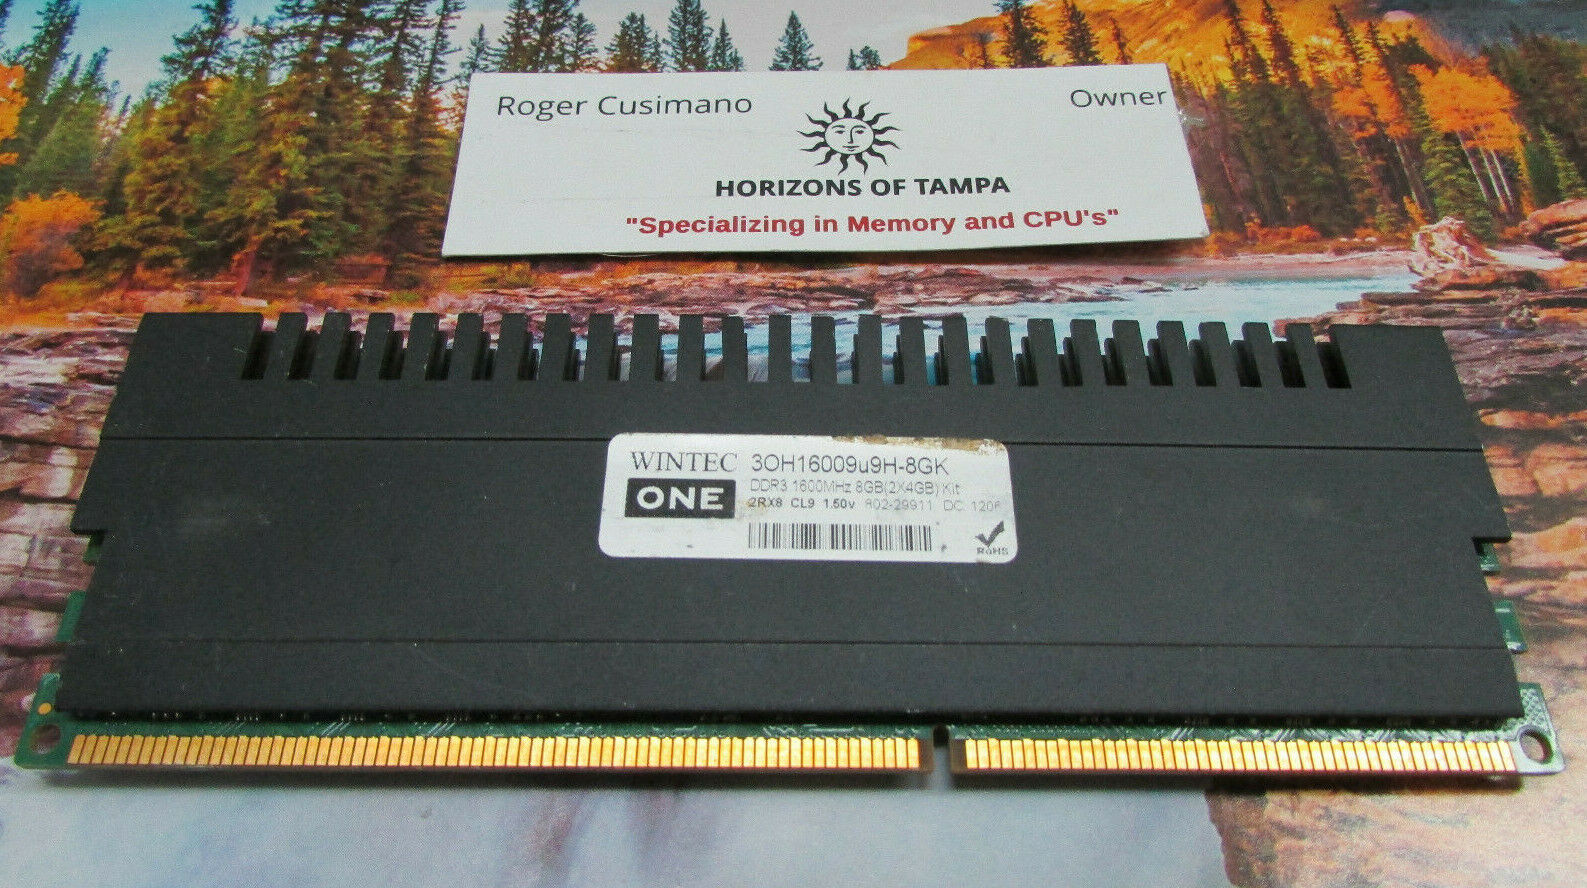 Wintec One 3OH16009u9H-8GK DDR3 1600MHz 4GB 2Rx8 1.50V